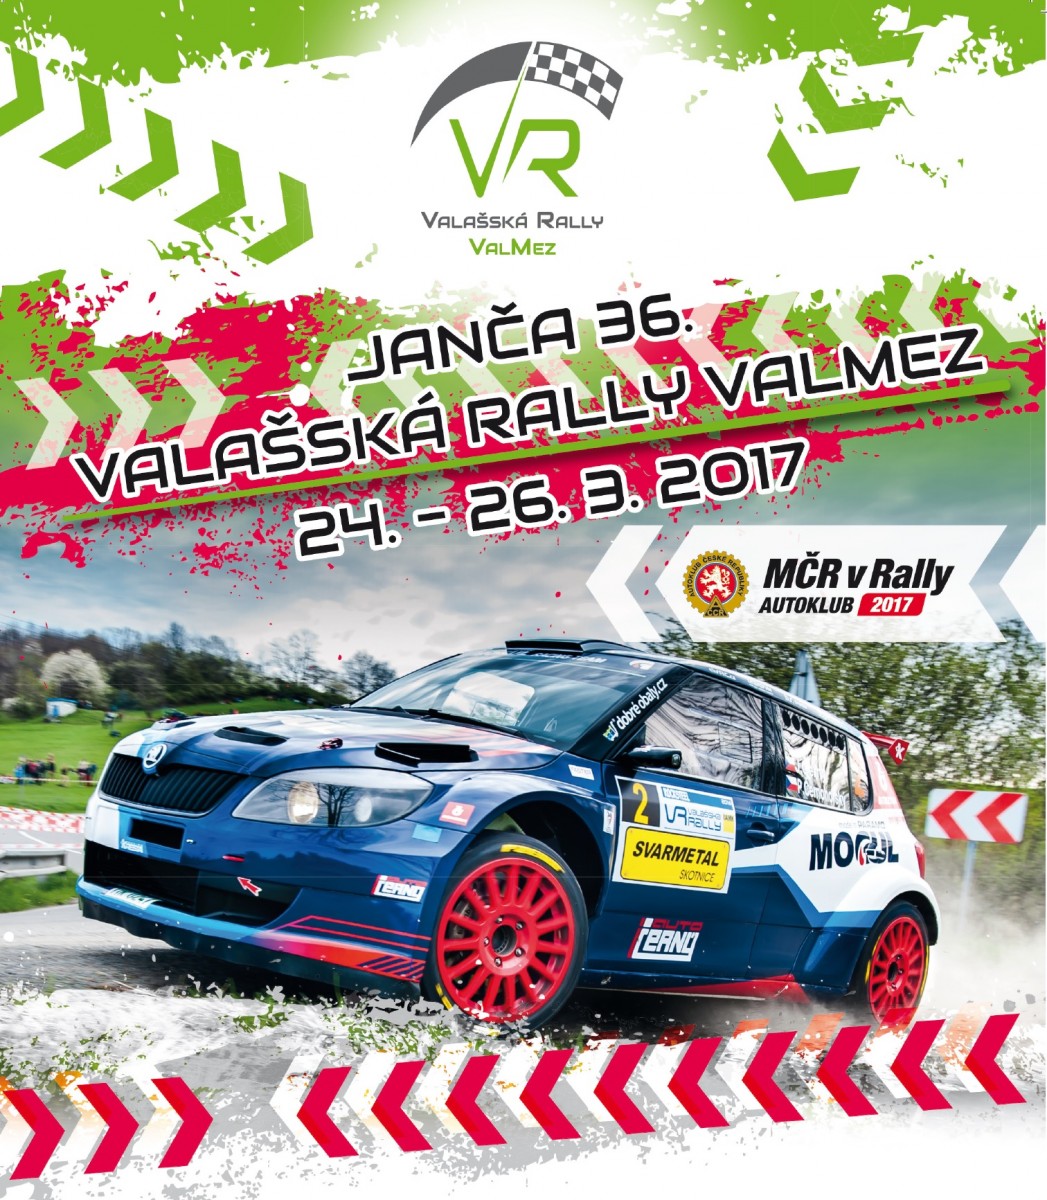 Nezapomenutelný zážitek při Janča - 36. Valašská rally Valmez